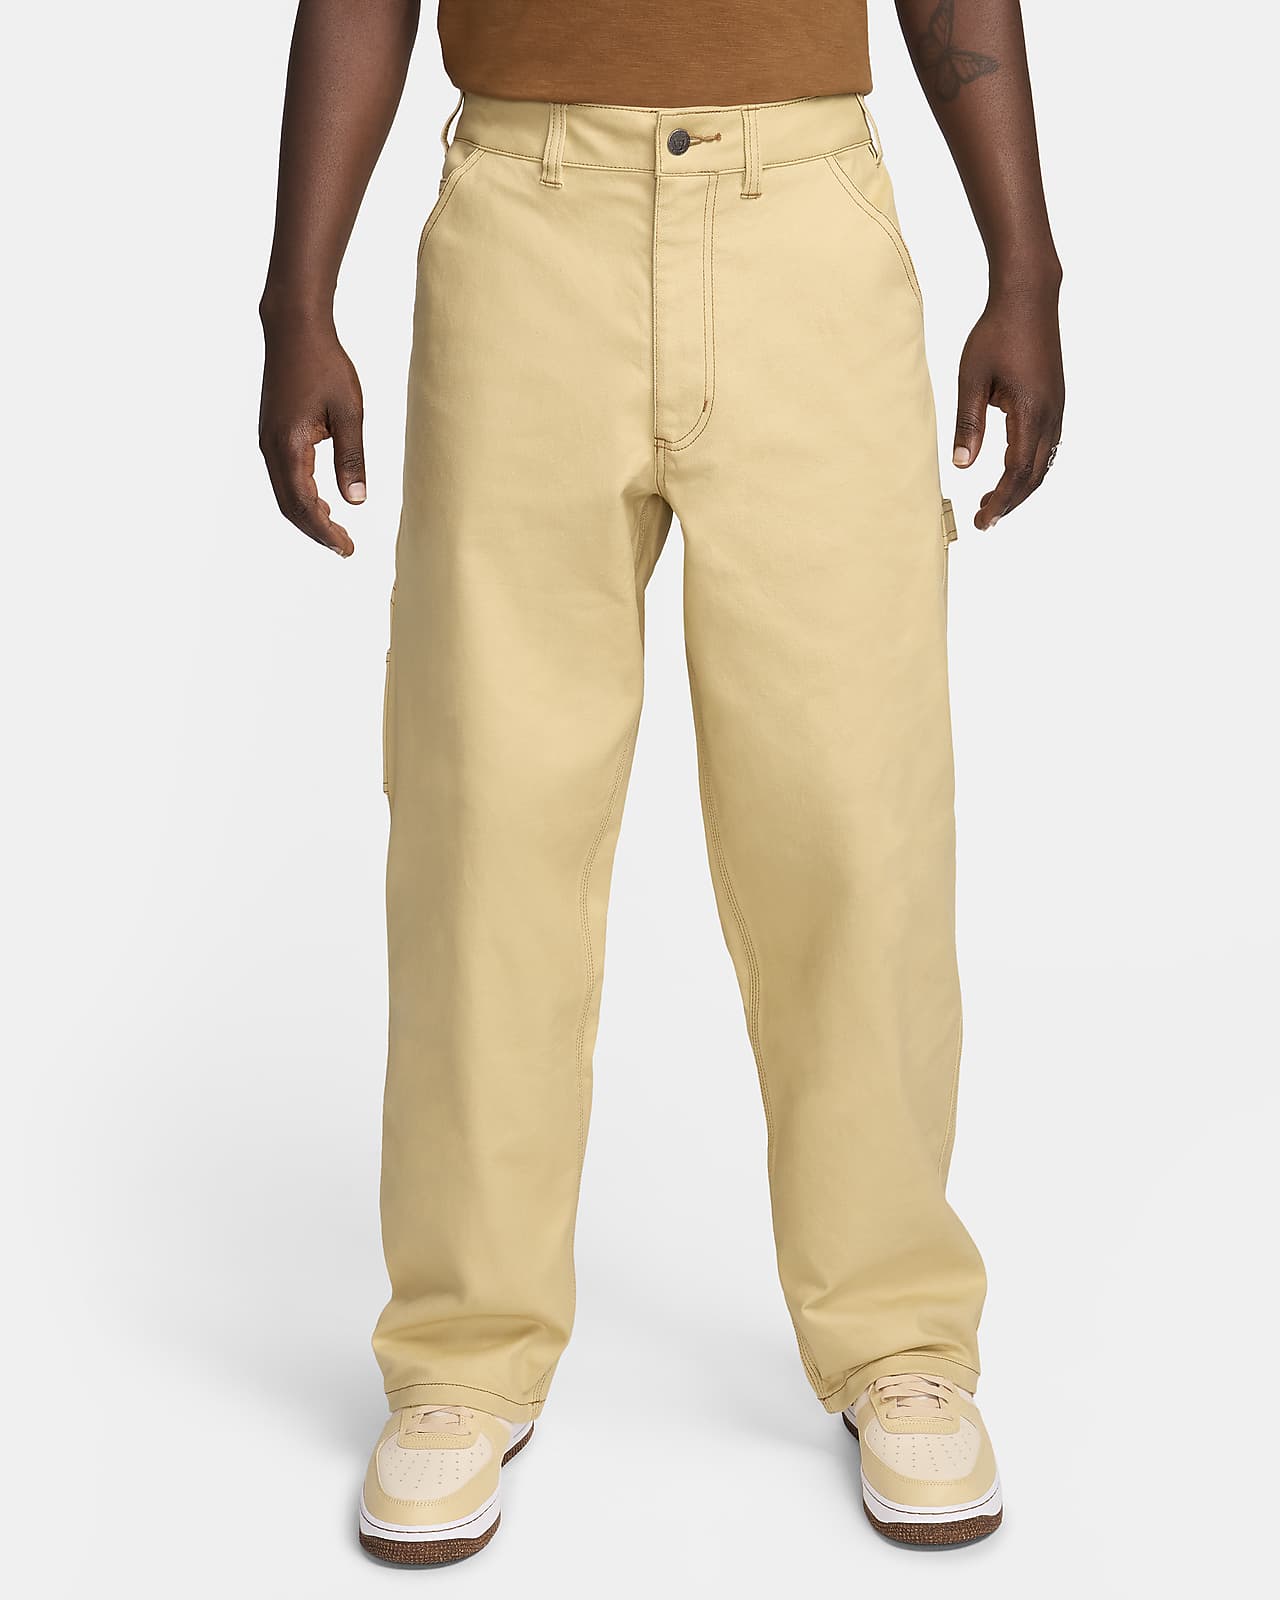 Nike Life Men's Carpenter Trousers. Nike AU